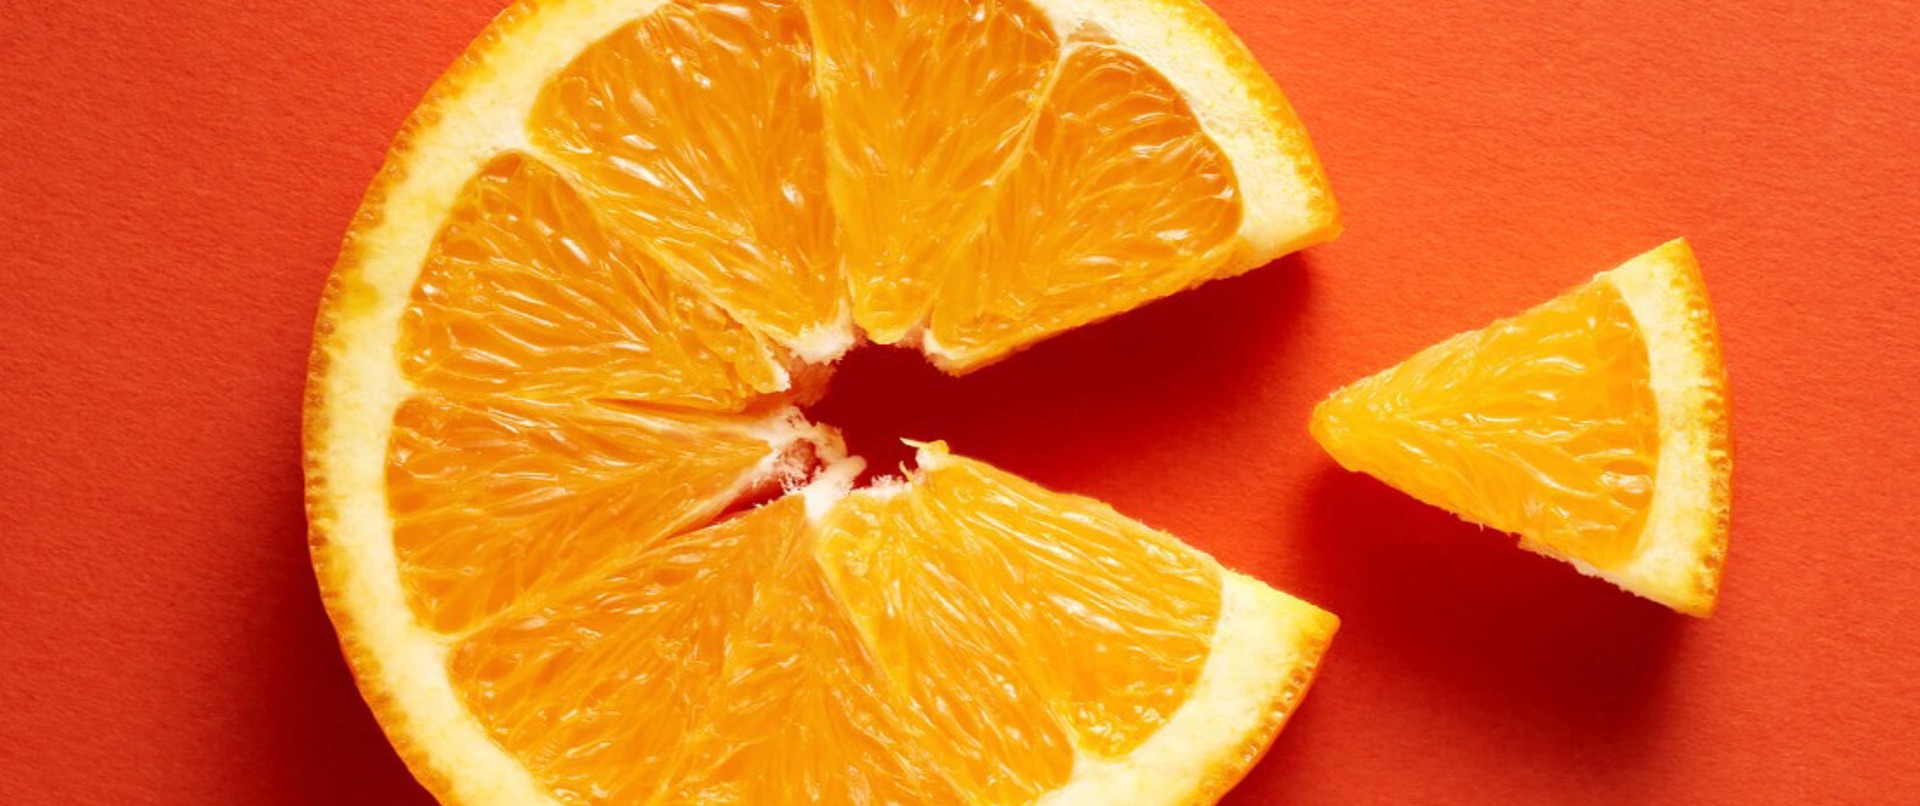 C Vitamini Eksikliğinin Belirtileri Nelerdir? Nasıl Tedavi Edilir?